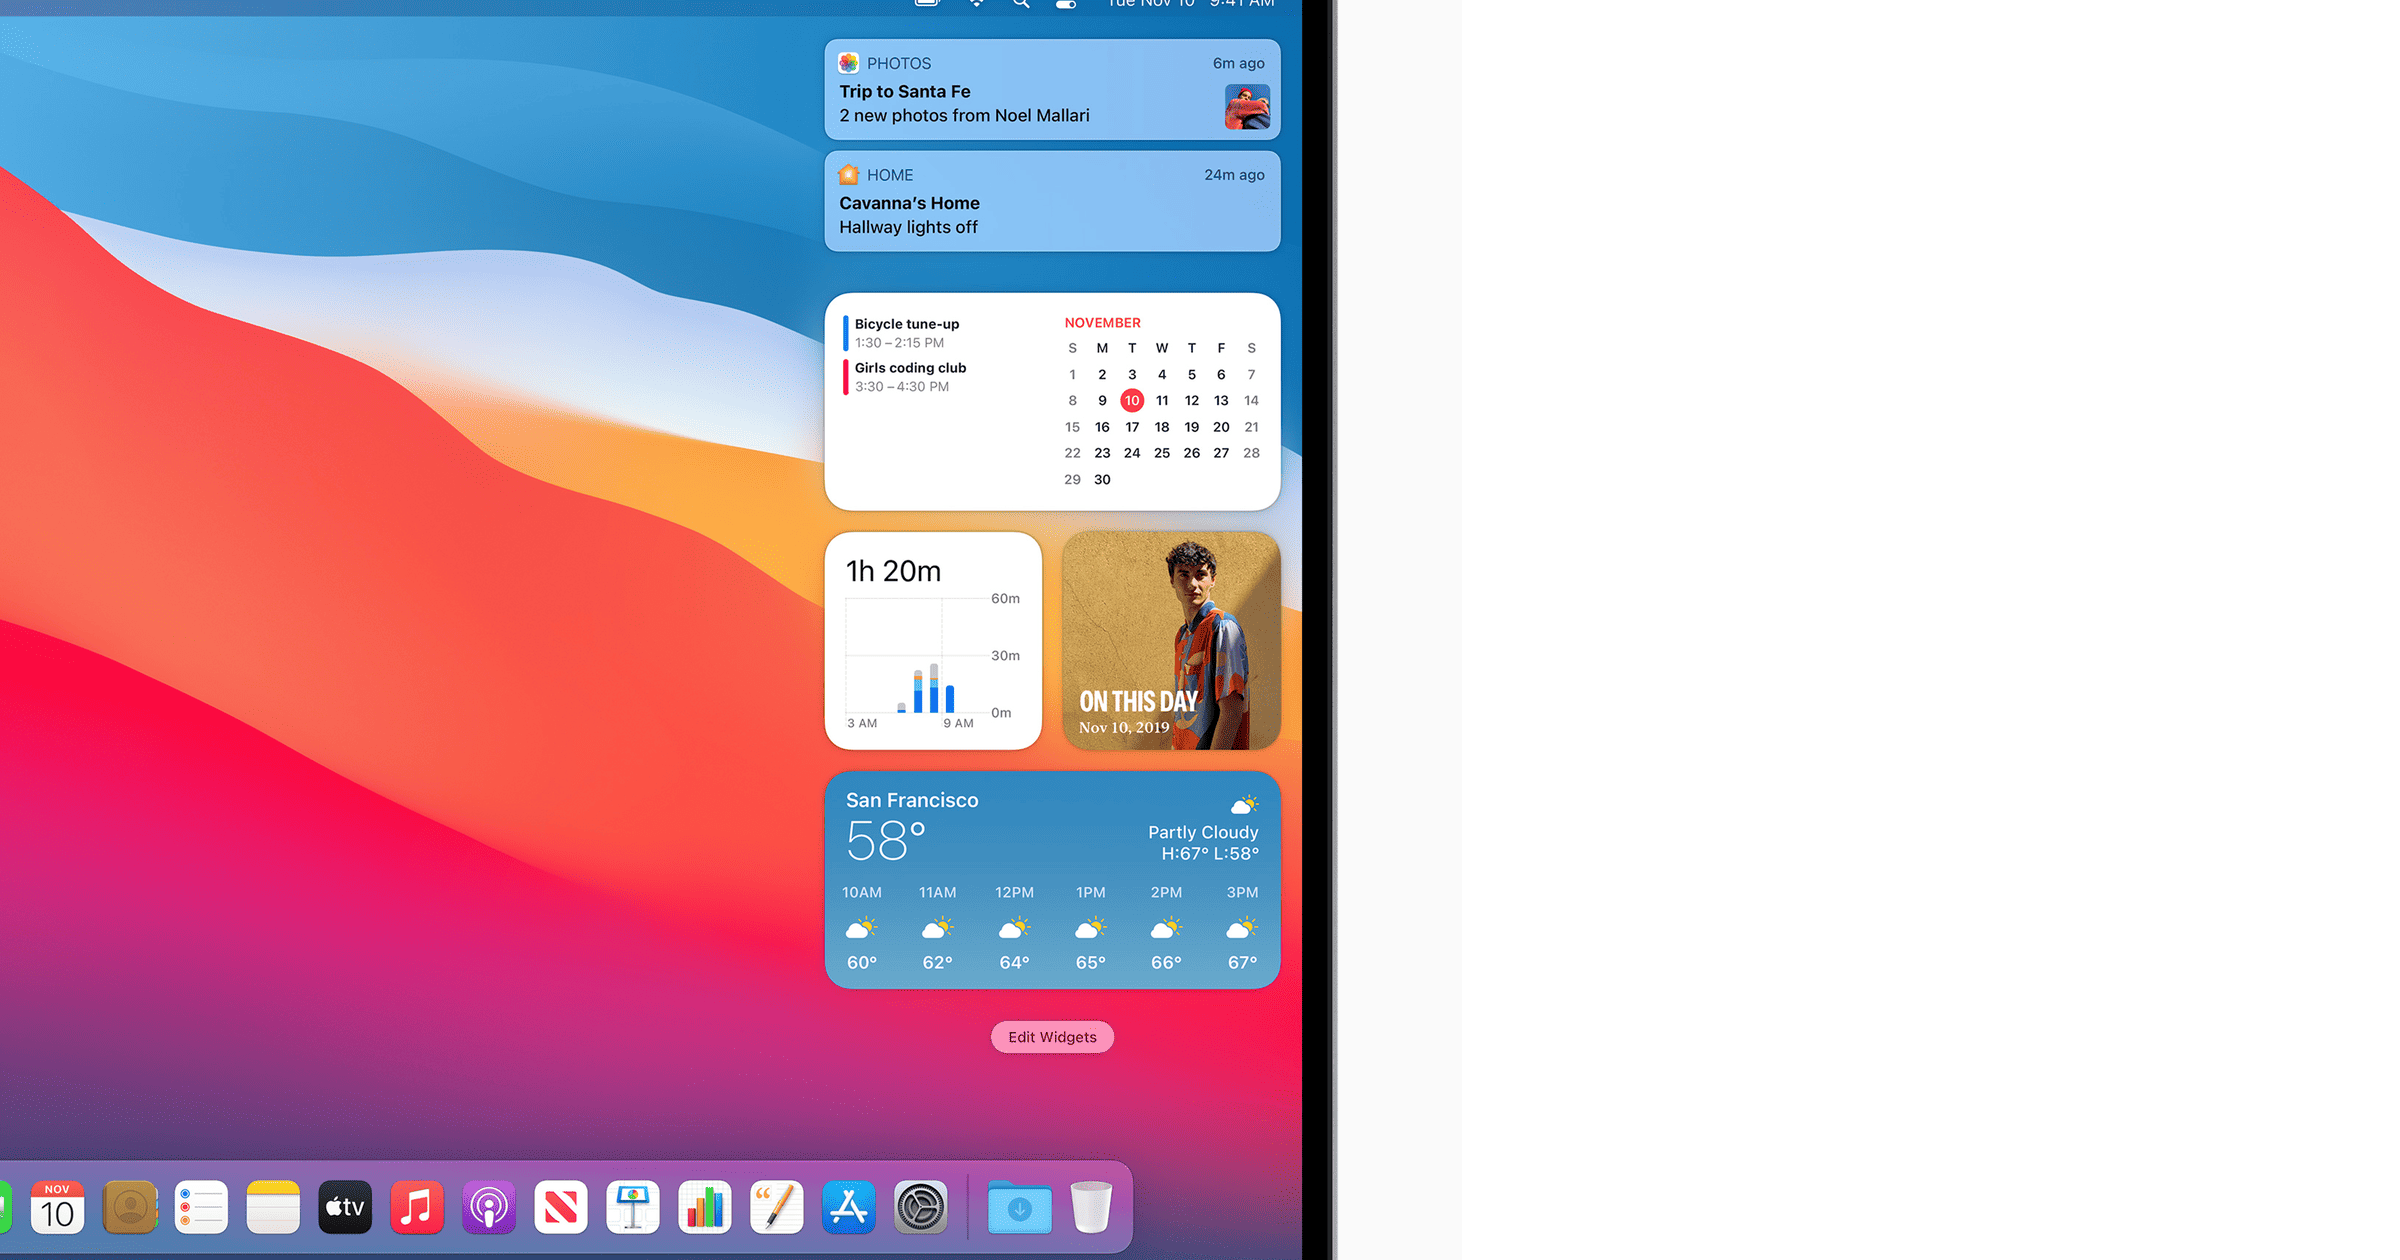 widgets for macbook pro